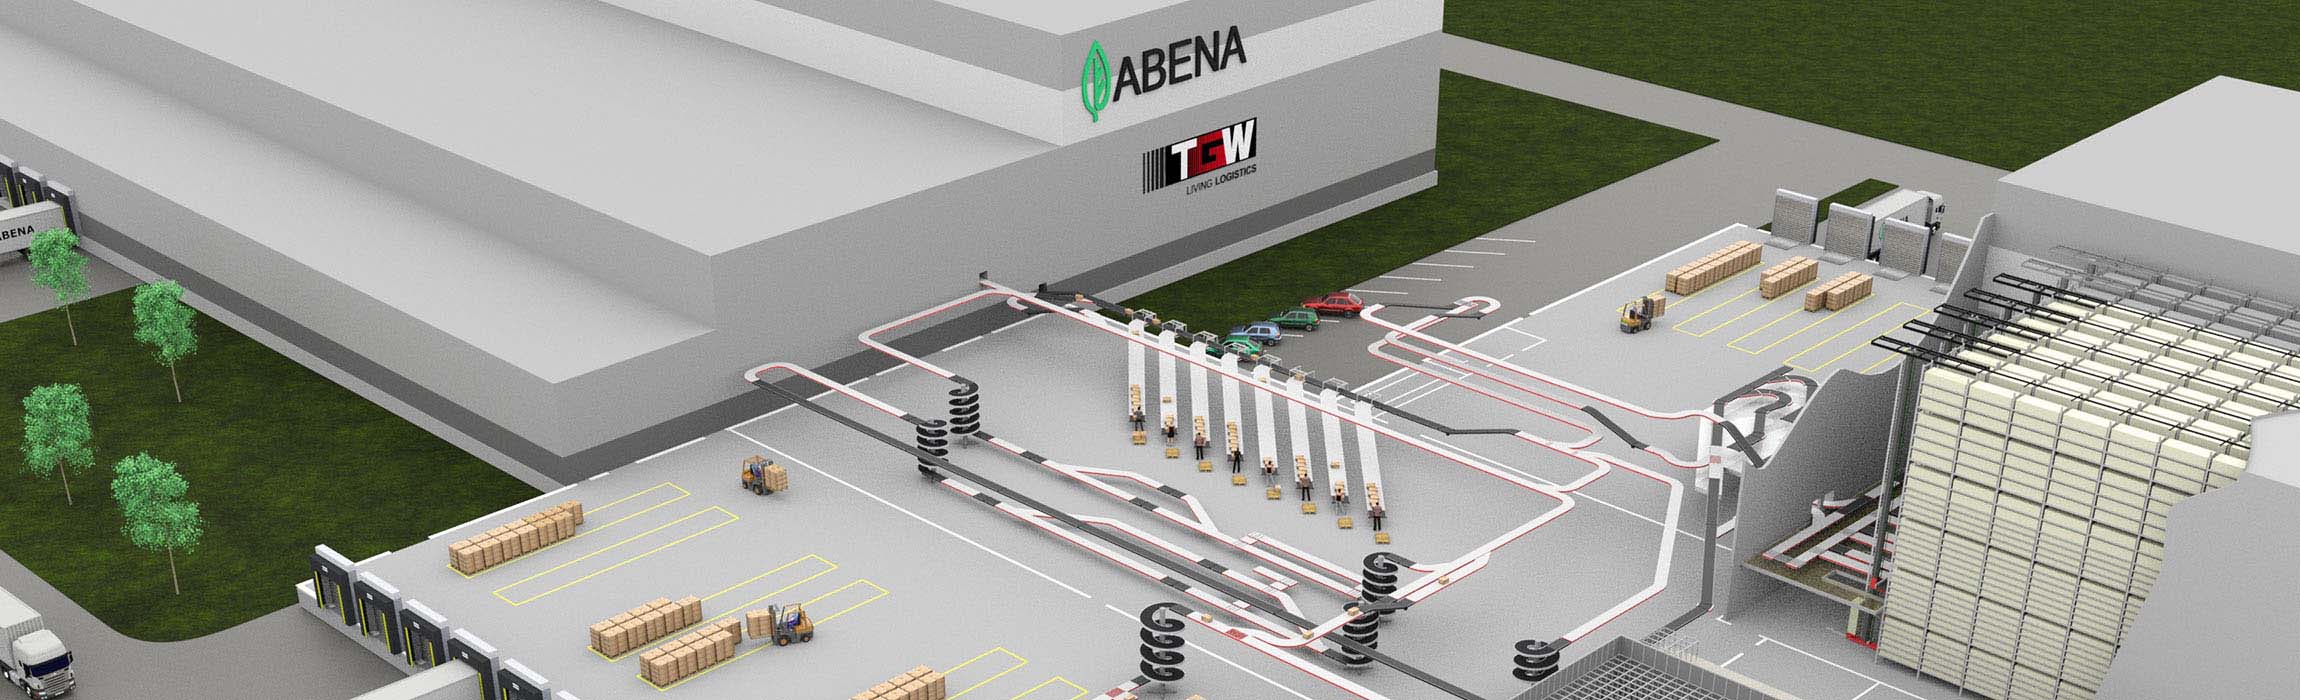 Abena setzt bei der Erweiterung seines Logistikzentrums auf TGW-Know-how.